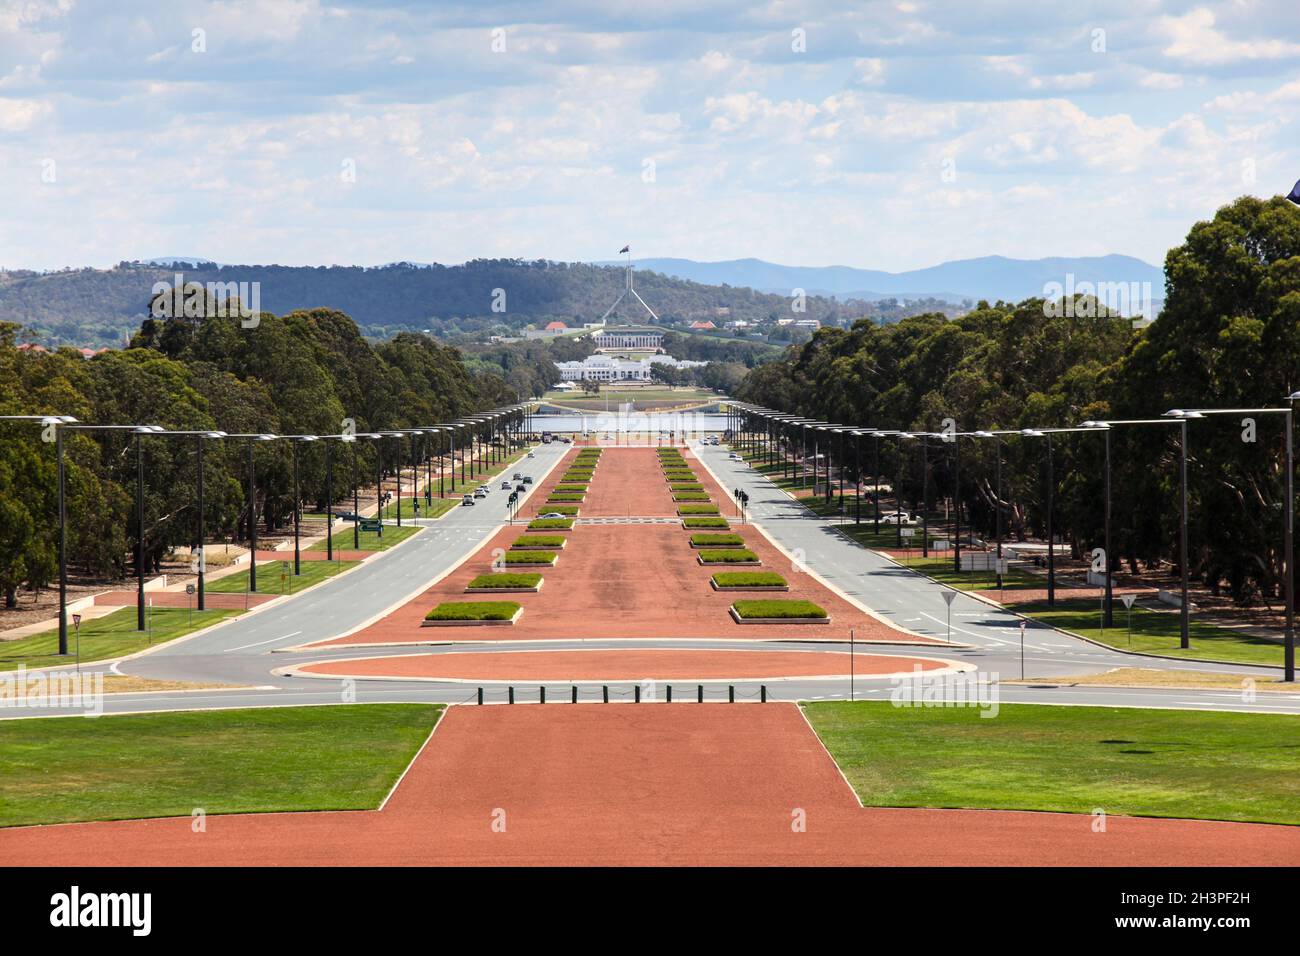 Canberra est la capitale de l'Australie et a été choisie pour être construite comme capitale en 1908.Cette vue est du Mémorial de guerre australien a Banque D'Images